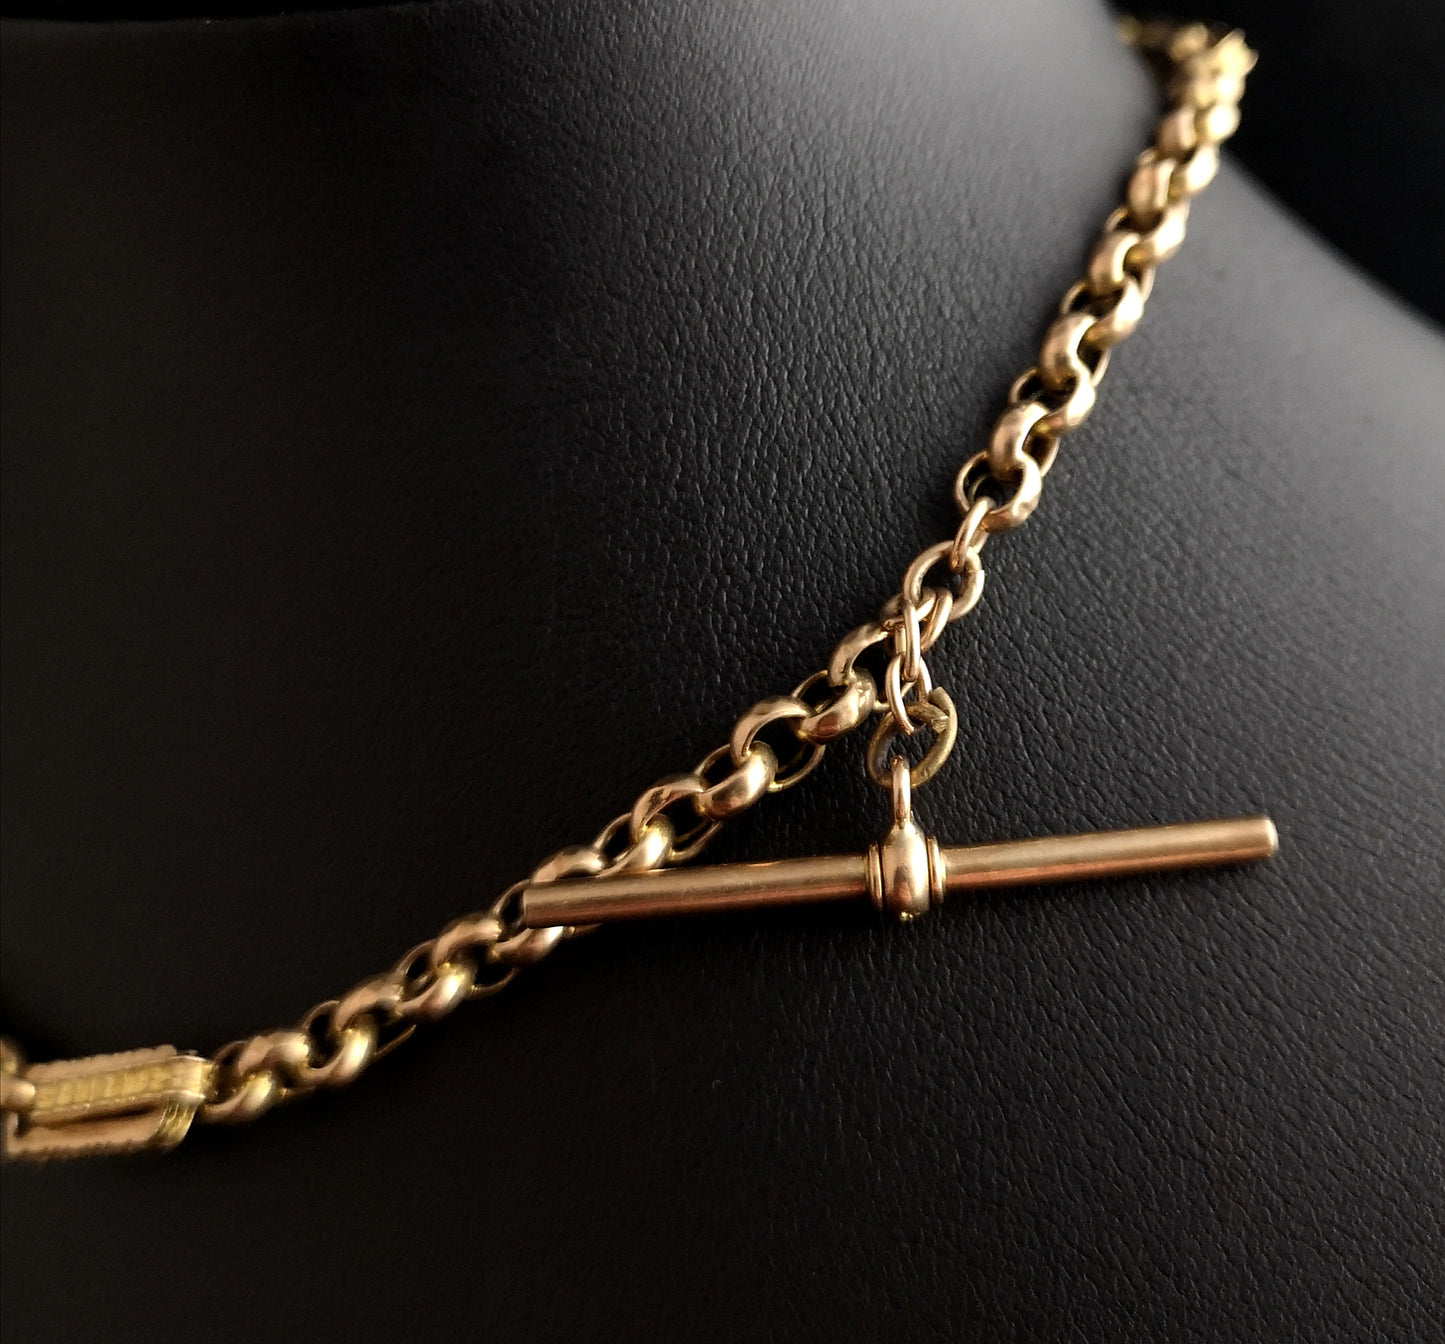 Antique Victorian 9ct gold Albert chain, watch chain